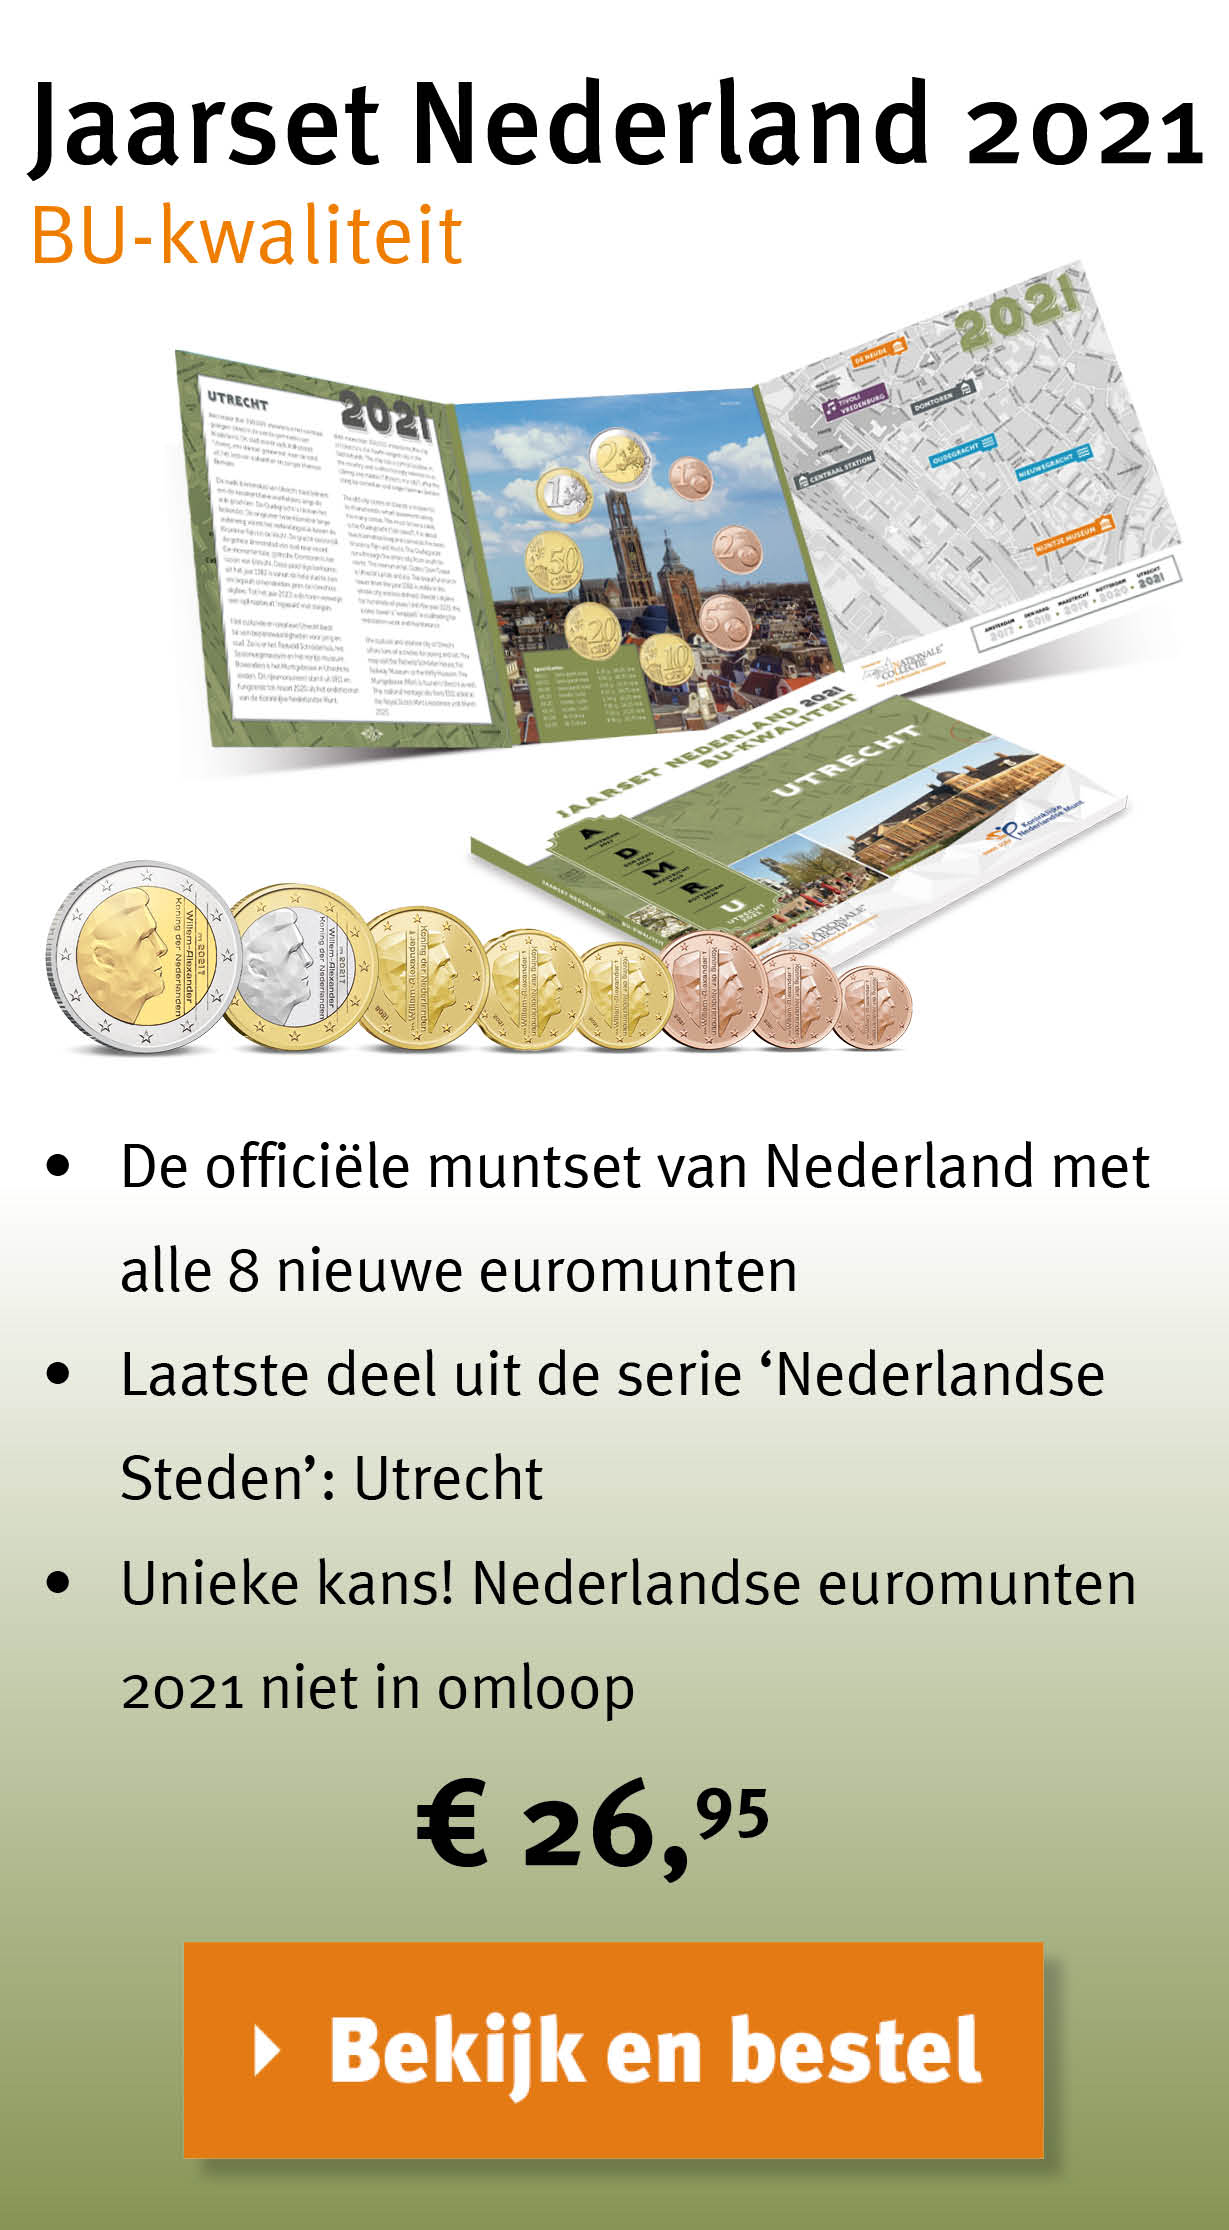 Bekijk en bestel: Jaarset Nederland 2021 BU-kwaliteit